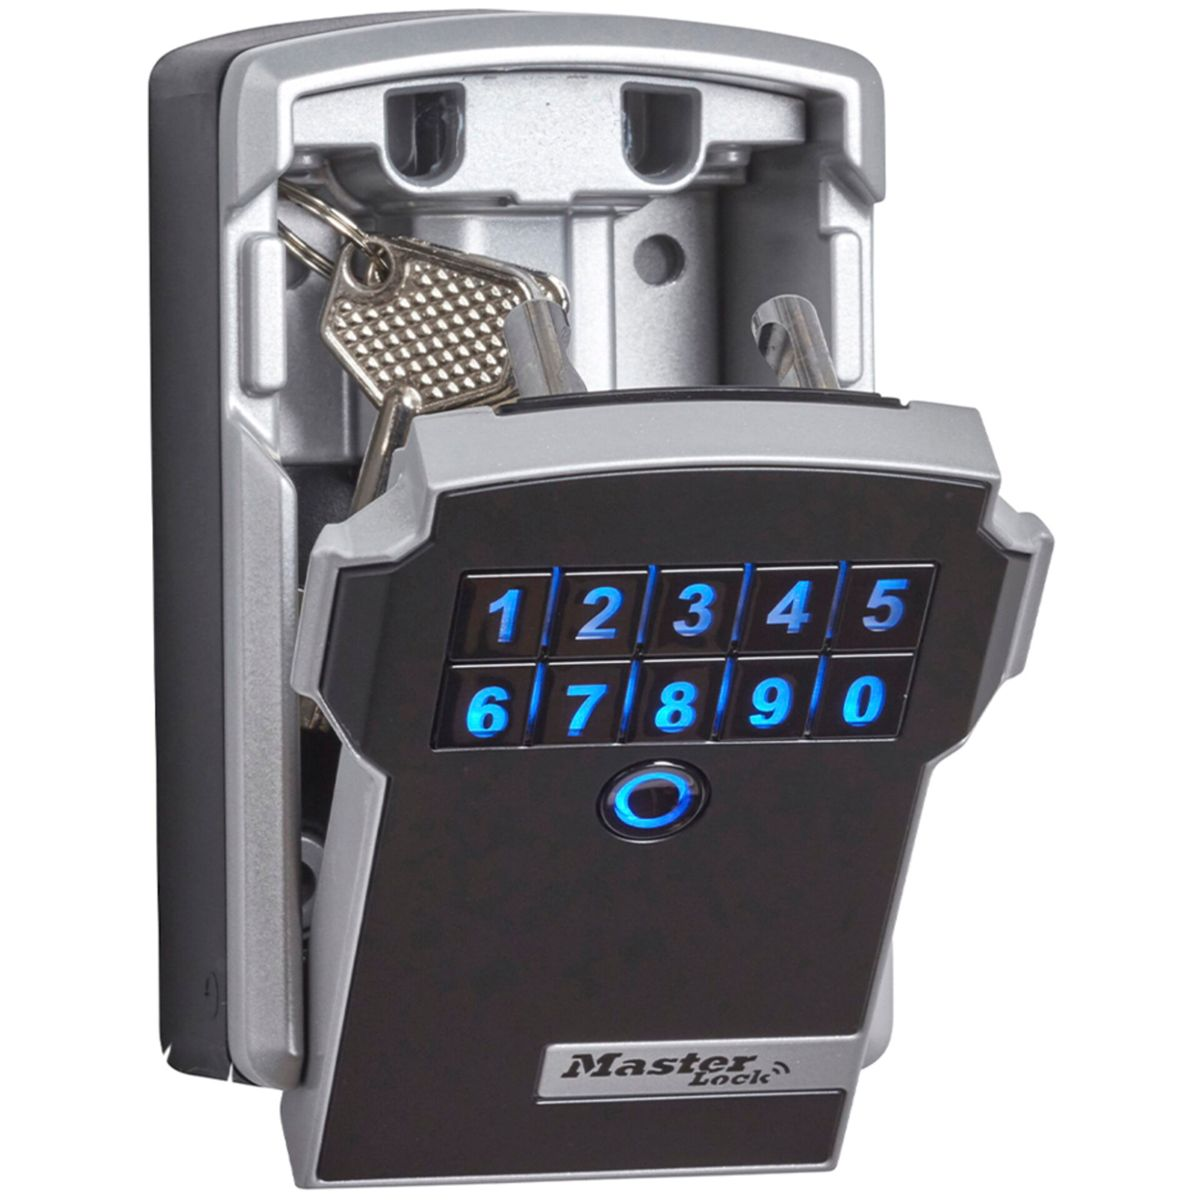 Schlüsselkasten Schlüsseltresor grau MASTERLOCK Lock grau schwarz 5441EURD / schwarz Master Bluetooth